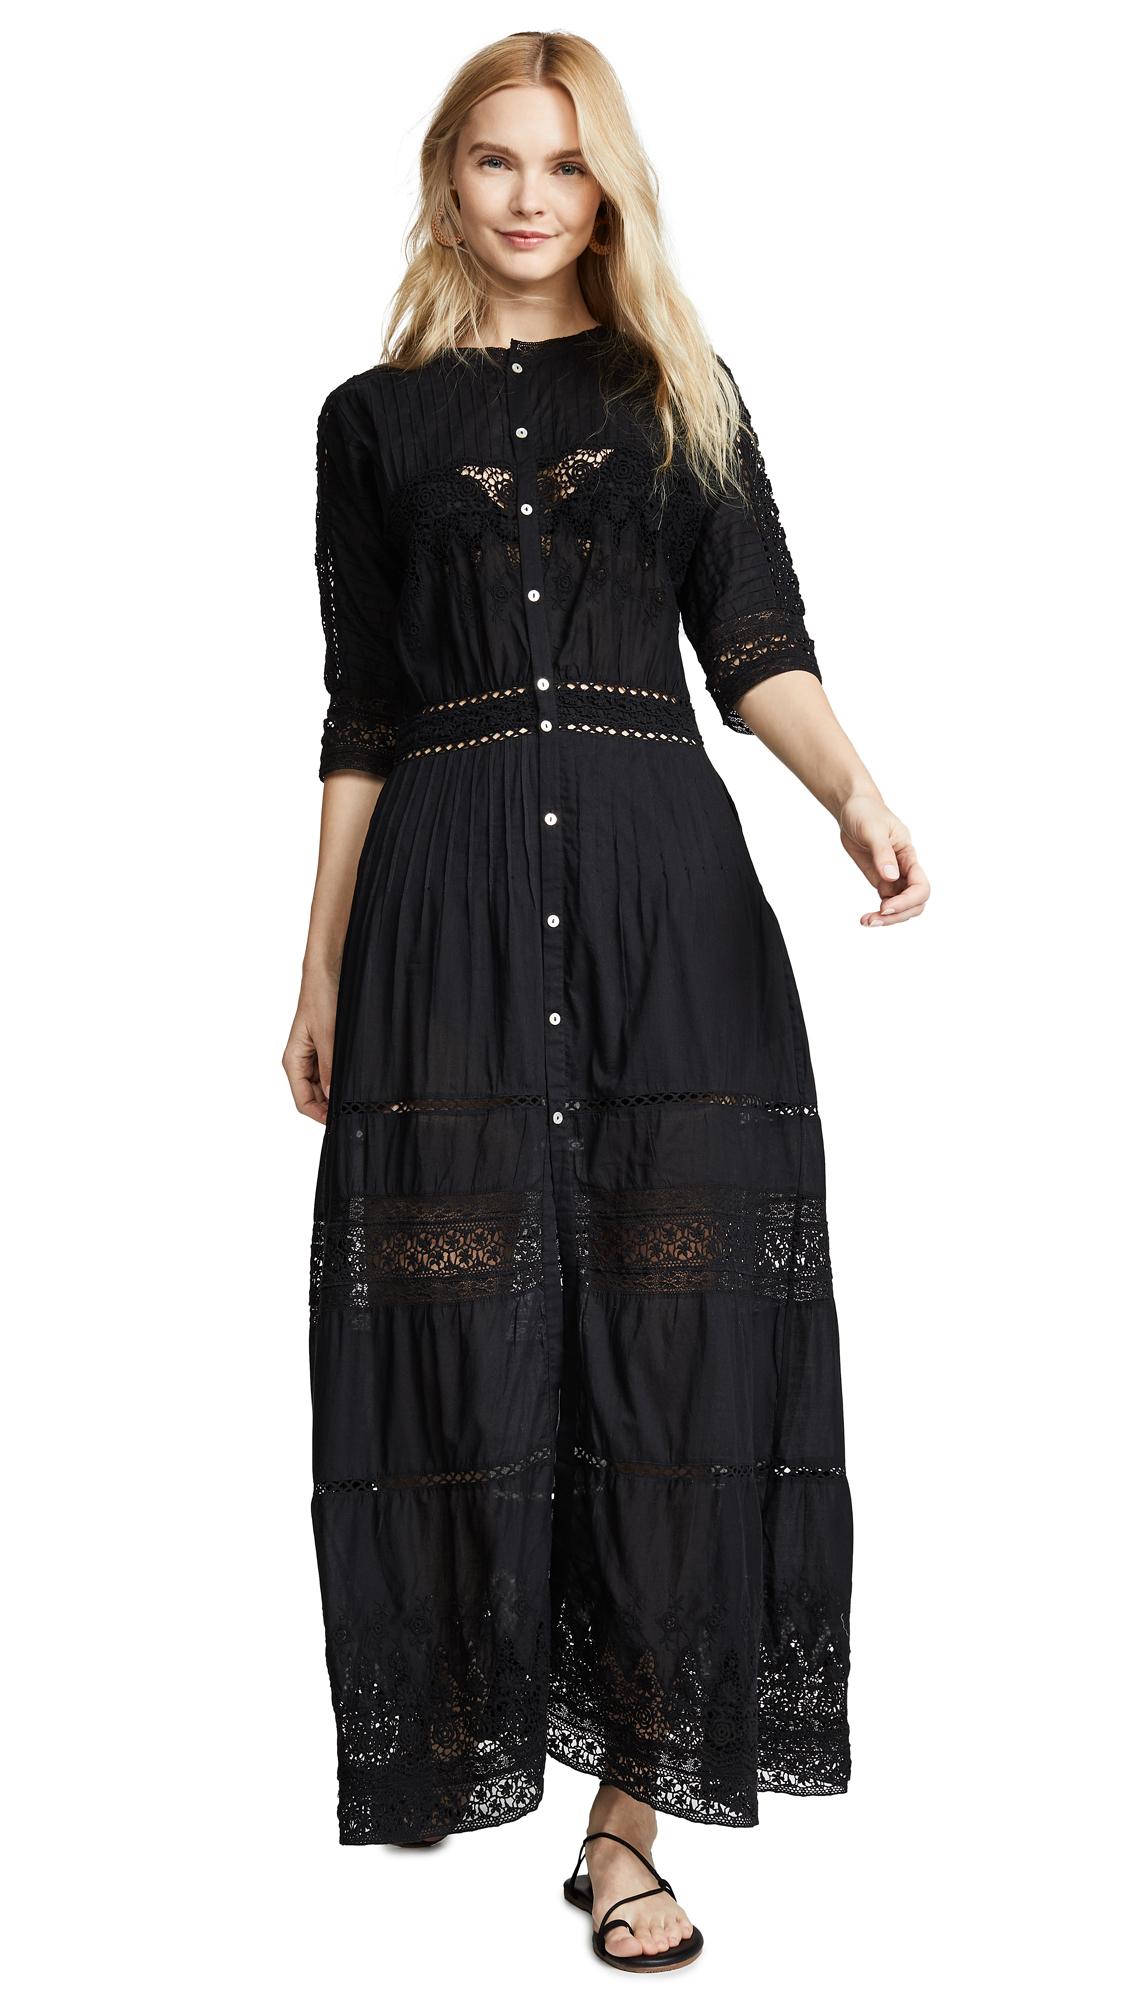 LoveShackFancy Lace Beth Dress in Black - Save 19% - Lyst